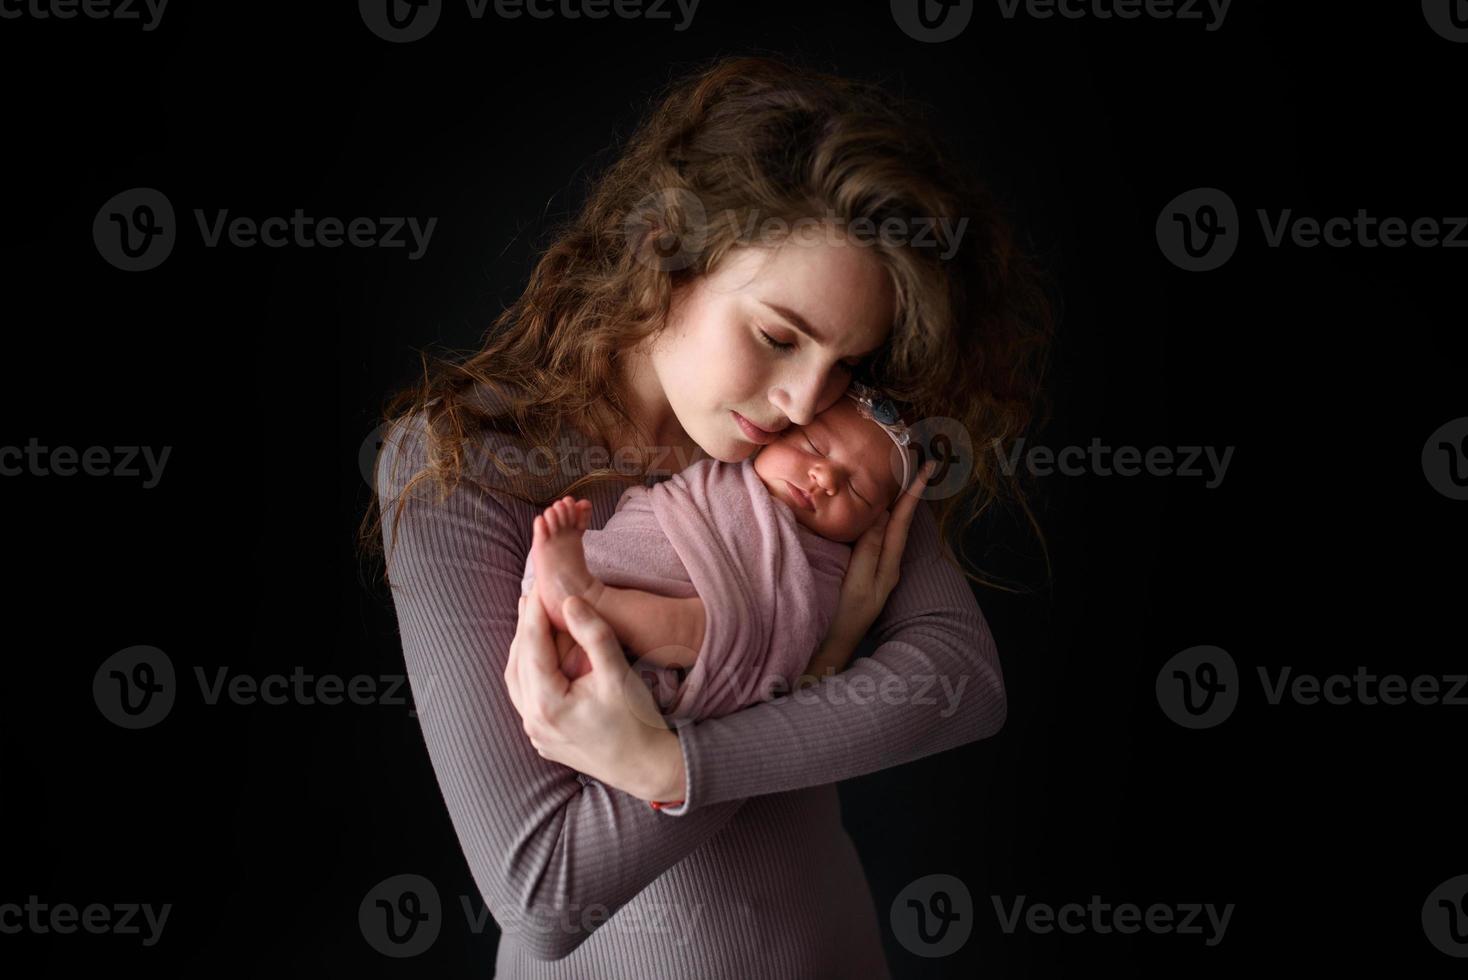 moeder houdt haar pasgeboren dochter vast. foto genomen op een donkere achtergrond.